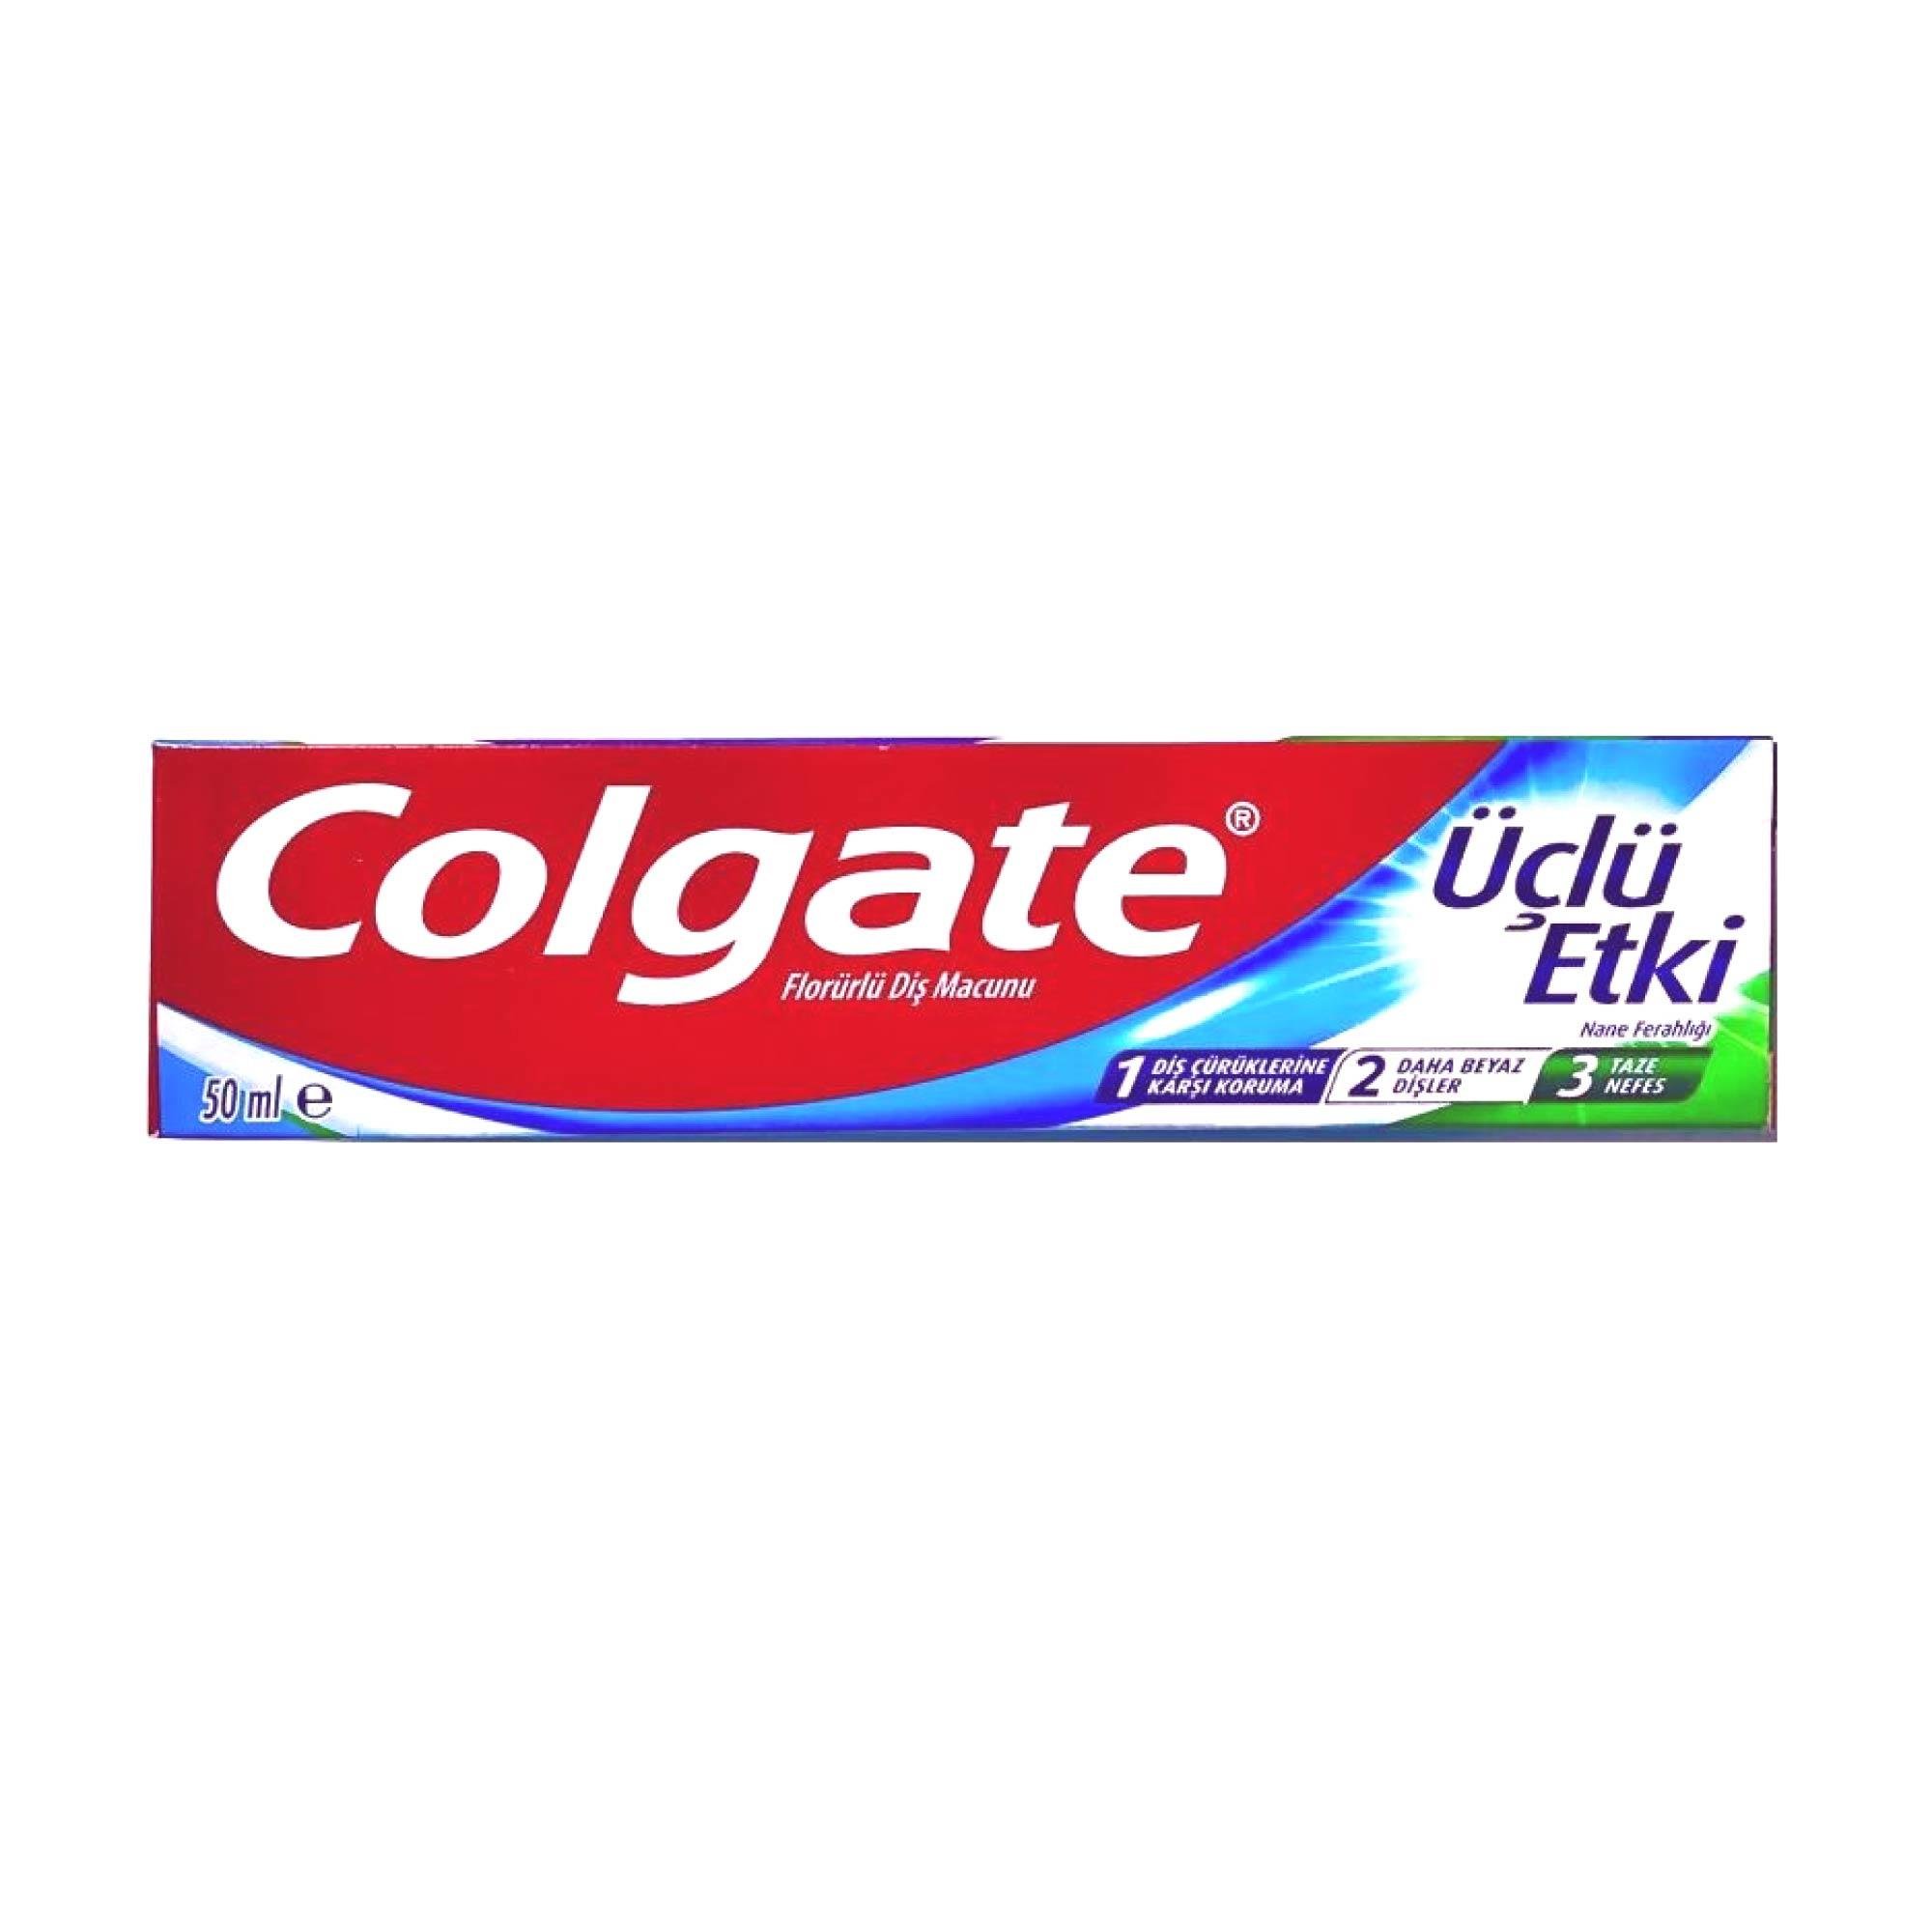 Colgate Florürlü Diş Macunu Üçlü Etki 50ml - Platin